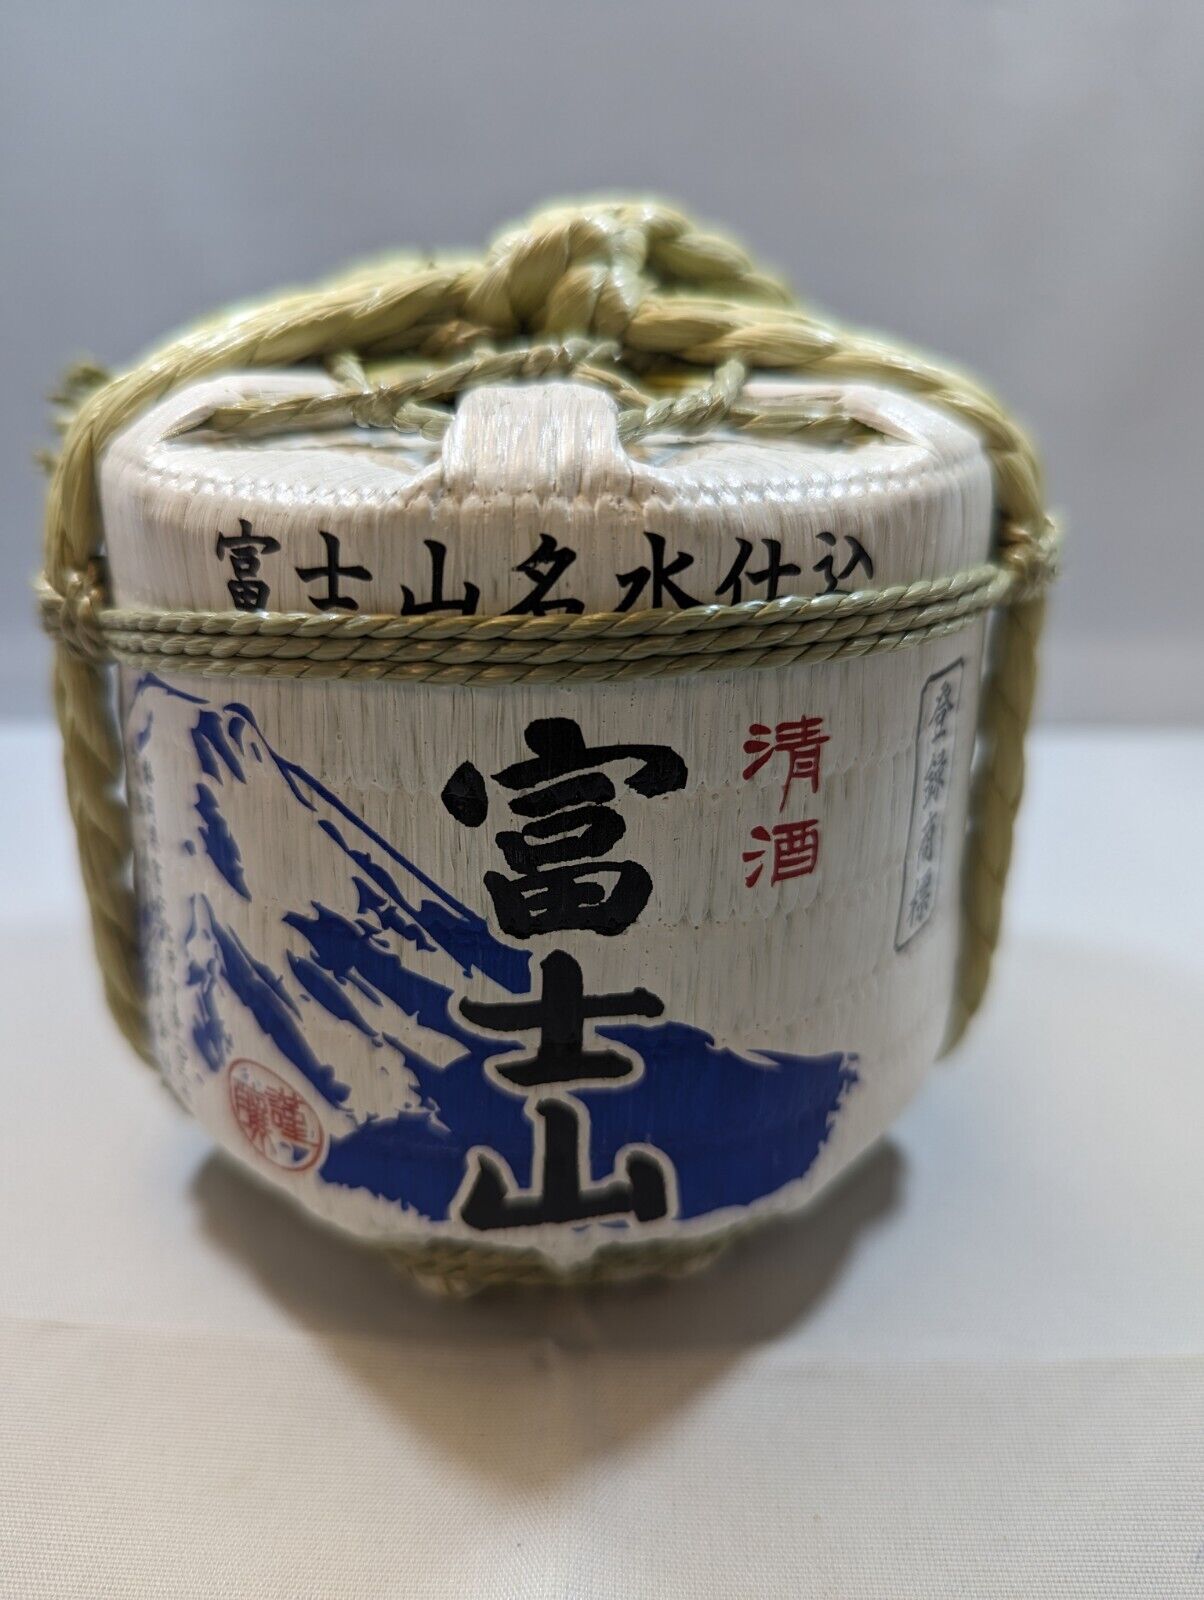 Sake Barrel From Japan Used in Kagami Biraki Ceremony {Empty}